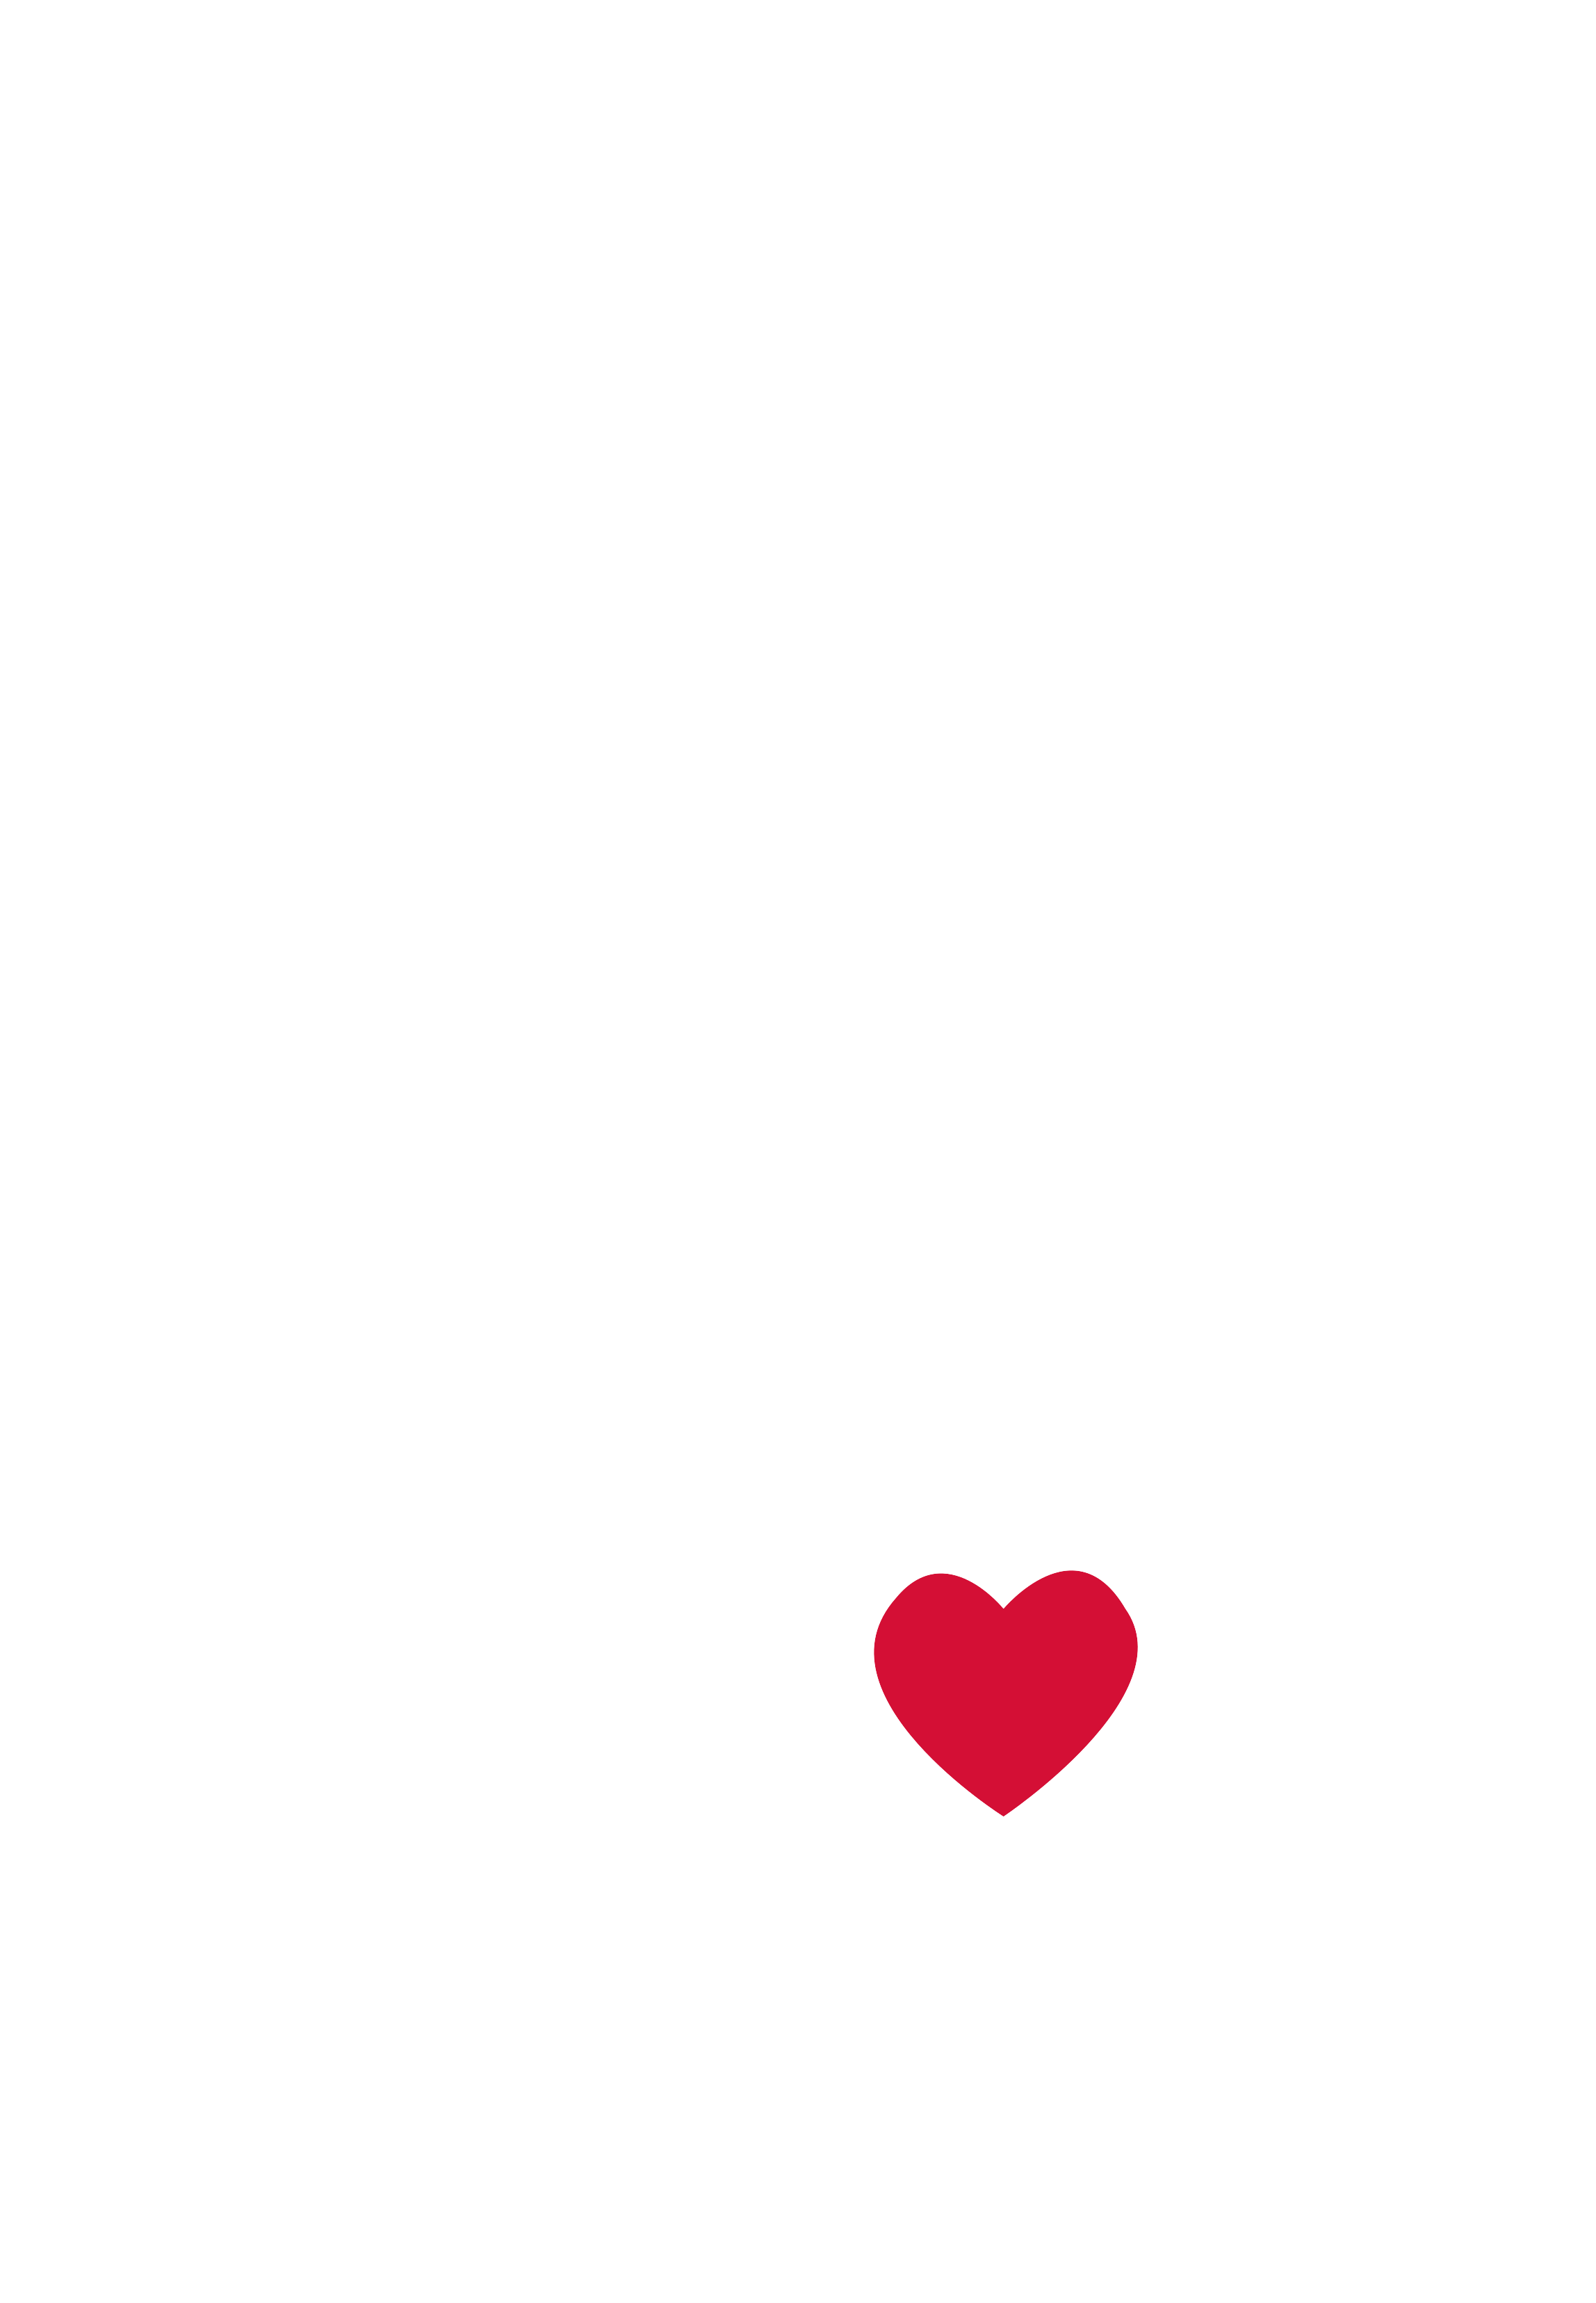 Das Logo von speisekarte.de ist eine stilisierte aufgeklappte Speisekarte mit einem roten Herzen auf der Vorderseite